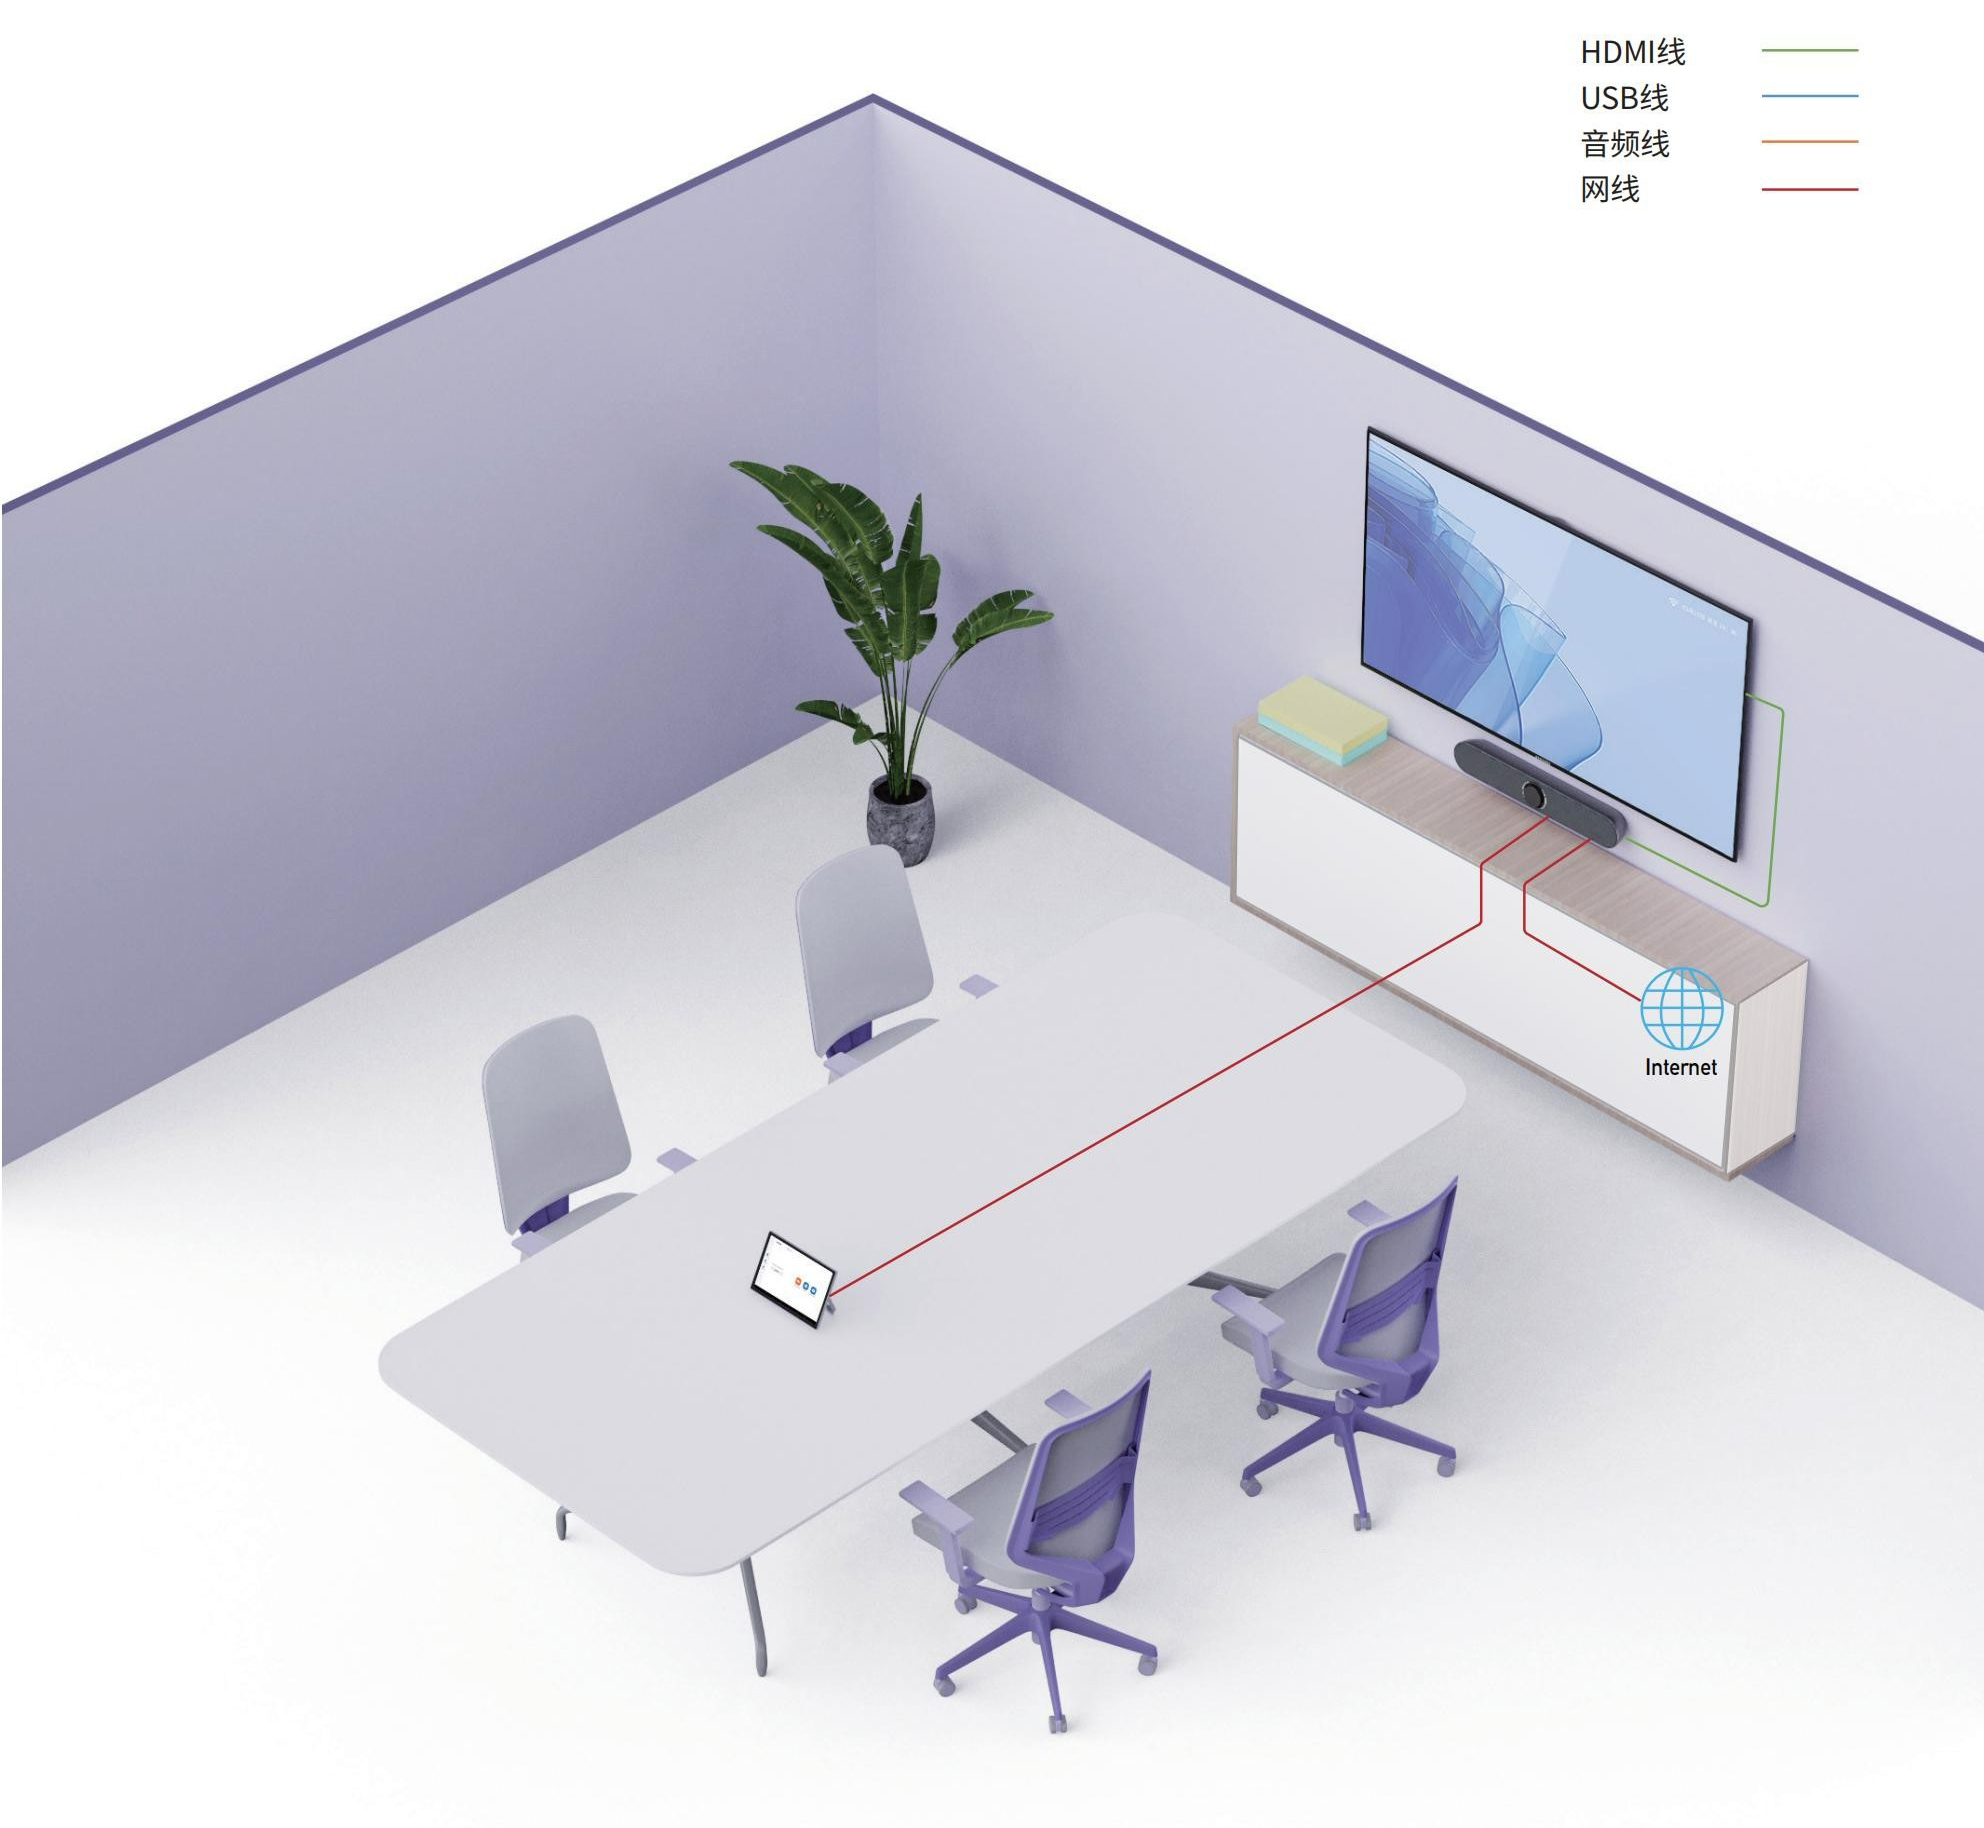 7、维海德VHD小型会议室解决方案（安卓一体机）-会议室部署图.jpg